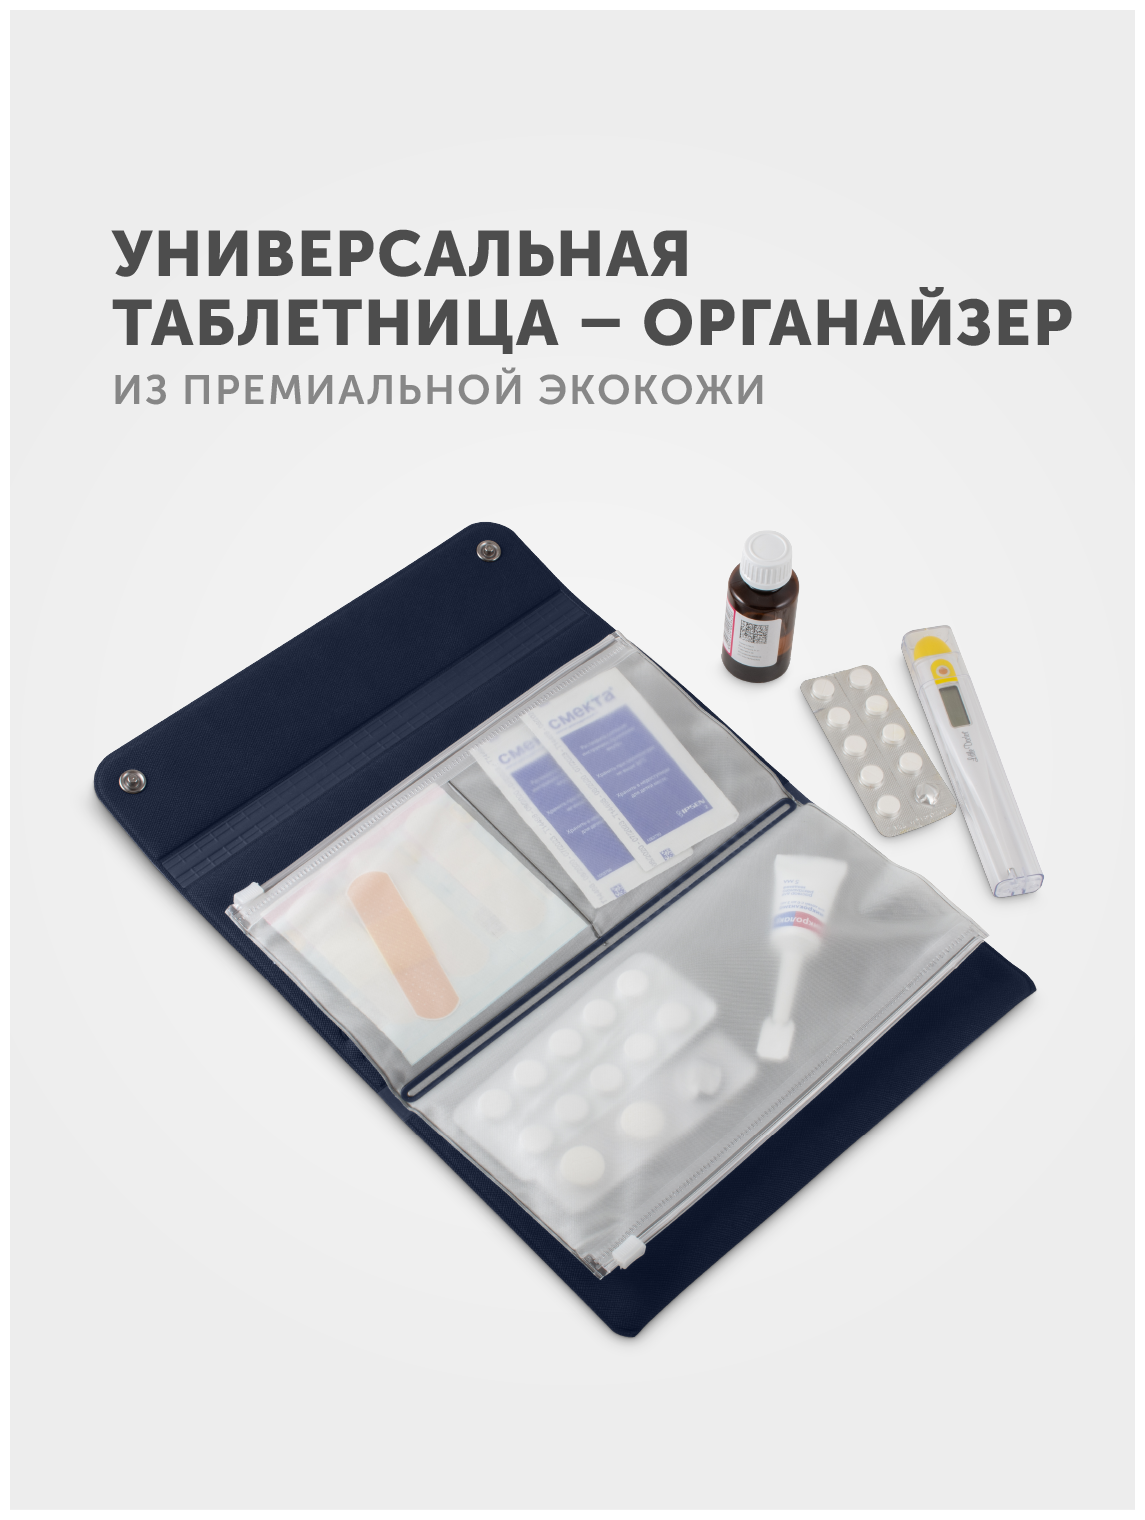 Таблетница Flexpocket, органайзер для медикаментов, аптечка дорожная для лекарств, цвет темно-синий